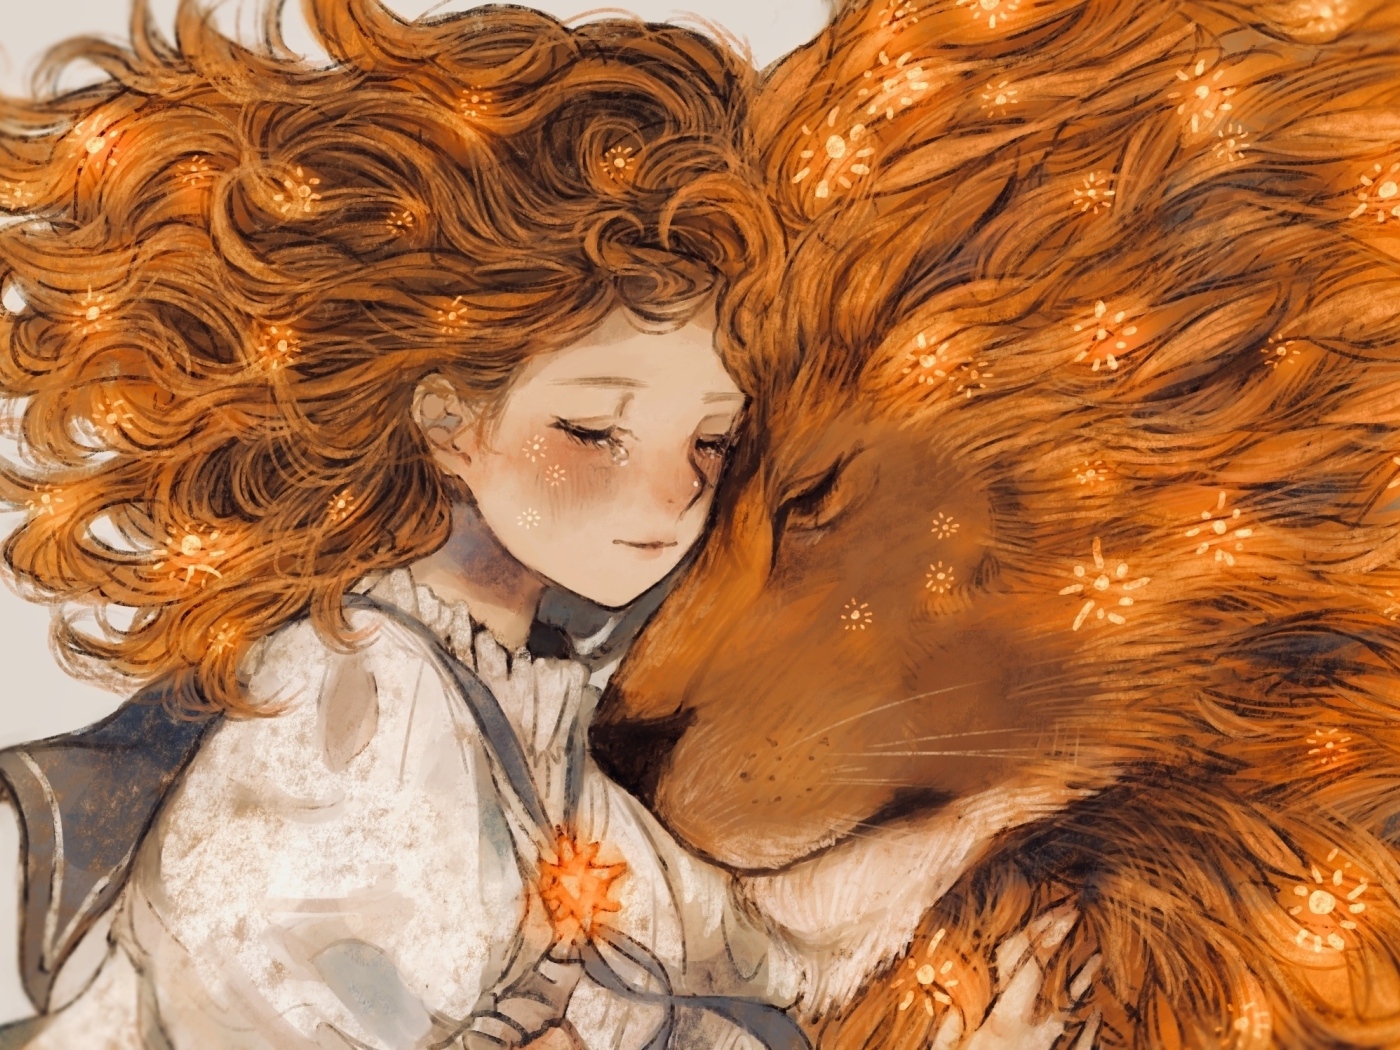 Нарисованная рыжеволосая девушка и лев